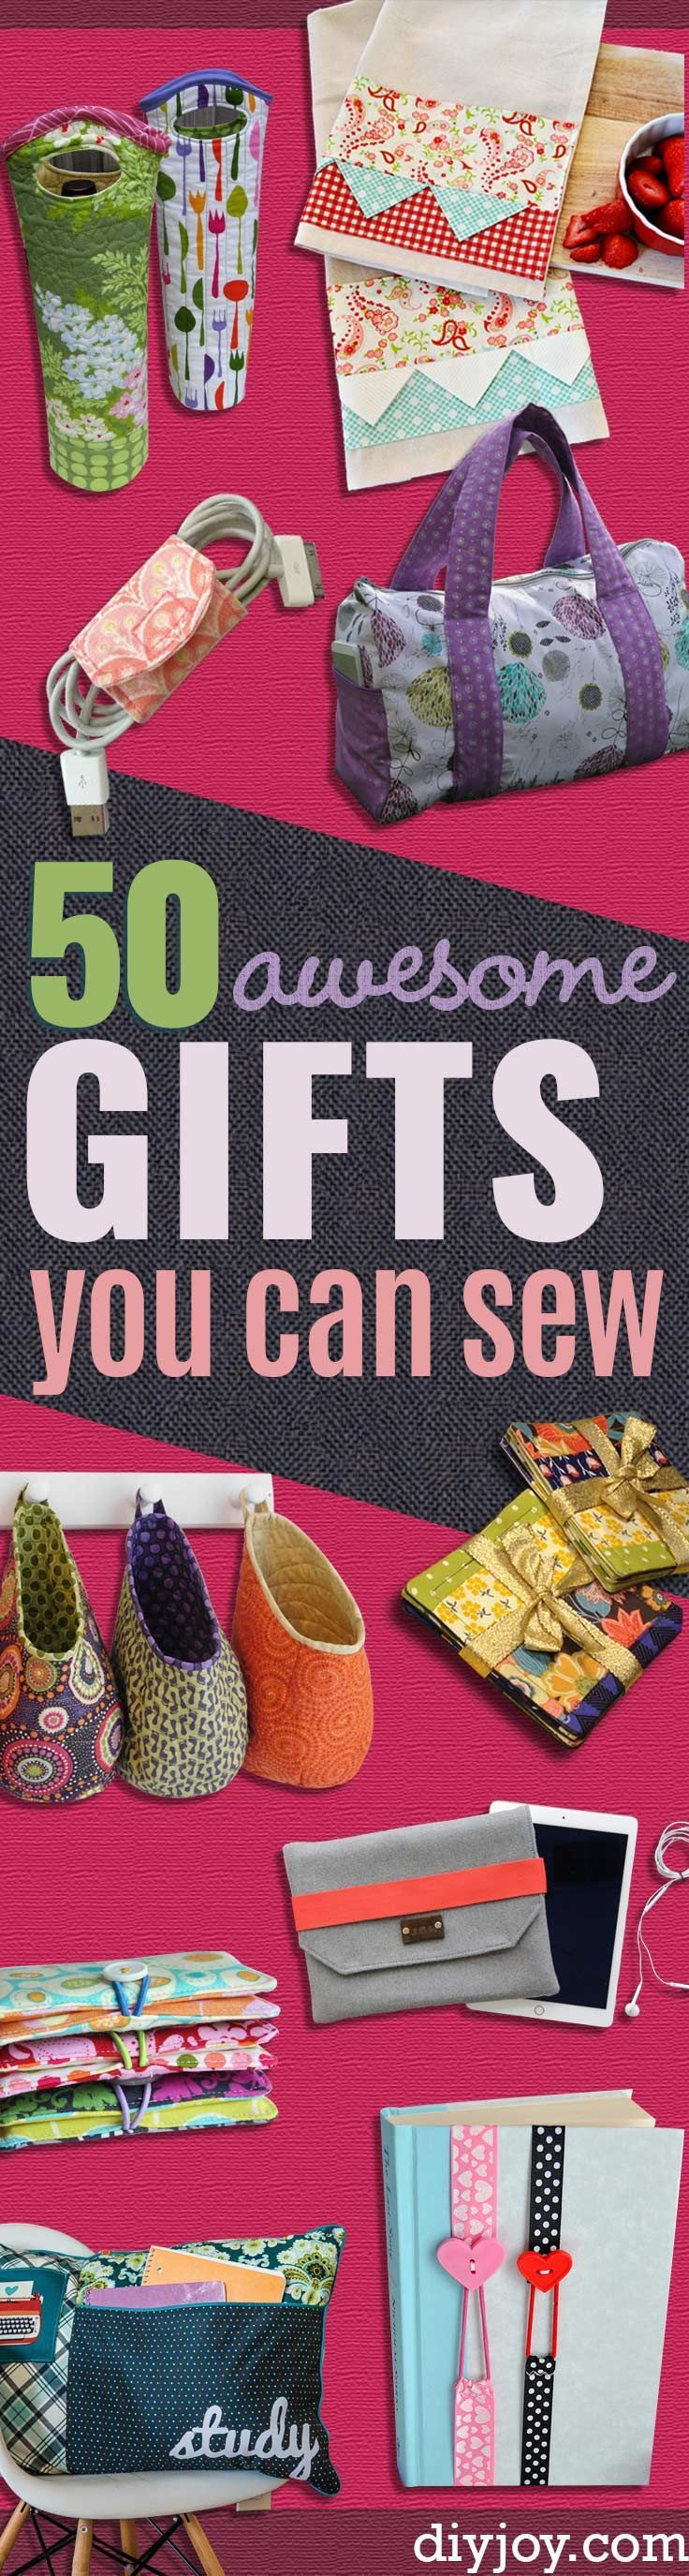 Geschenke Für Jugendliche
 Die besten 25 Jugendliche geschenke Ideen auf Pinterest